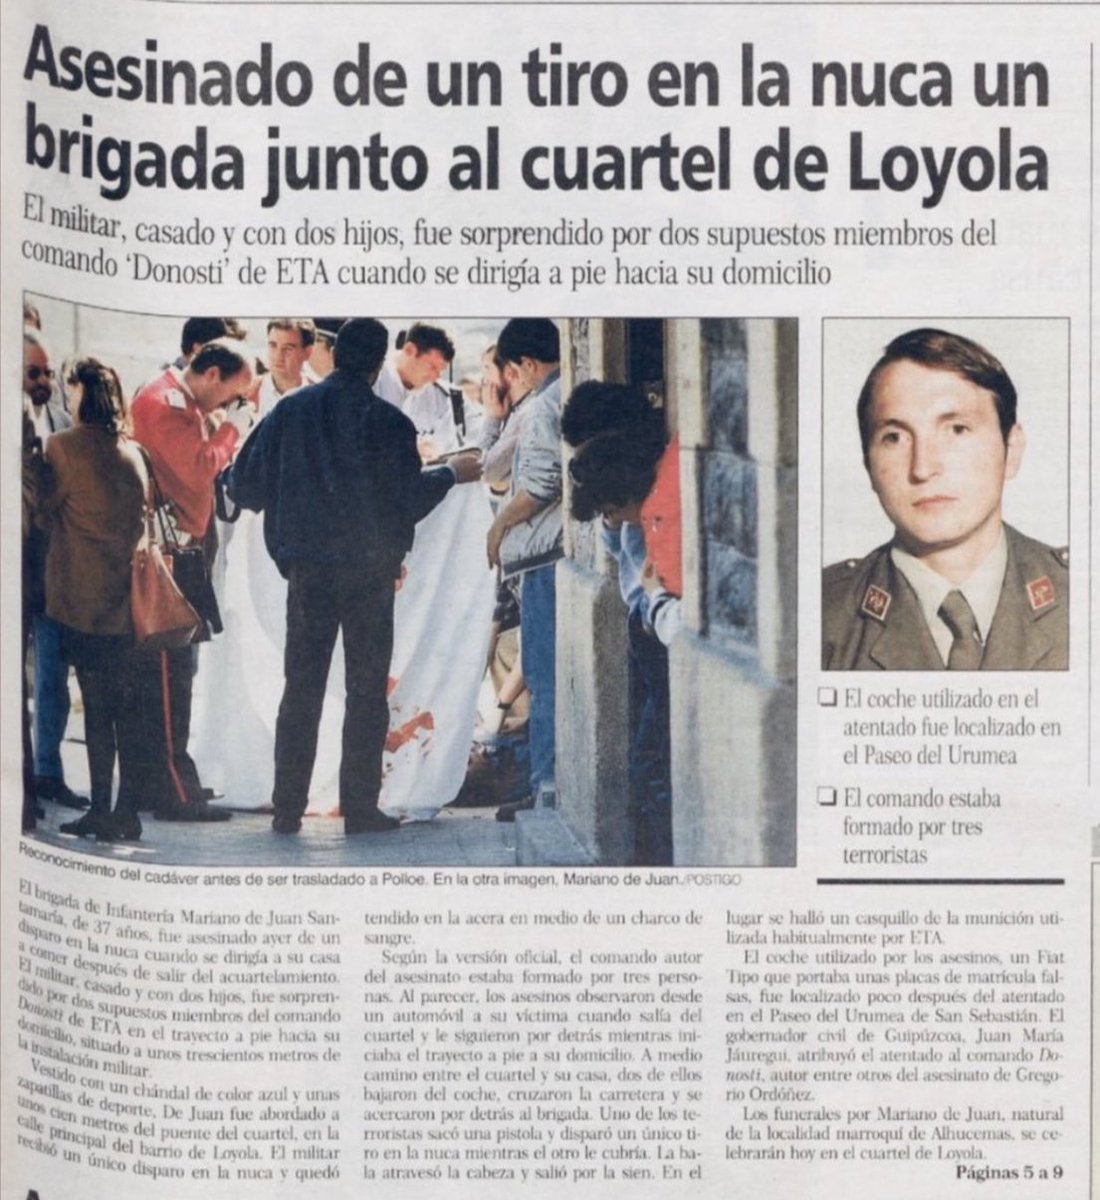 Un día como hoy de 1995 #ETA asesinó en #SanSebastián al brigada del @EjercitoTierra MARIANO DE JUAN SANTAMARÍA. 

Un terrorista le mató por la espalda cuando volvía caminando a su casa desde el Centro de Reclutamiento del Acuartelamiento de #Loyola.

#MEMORIA